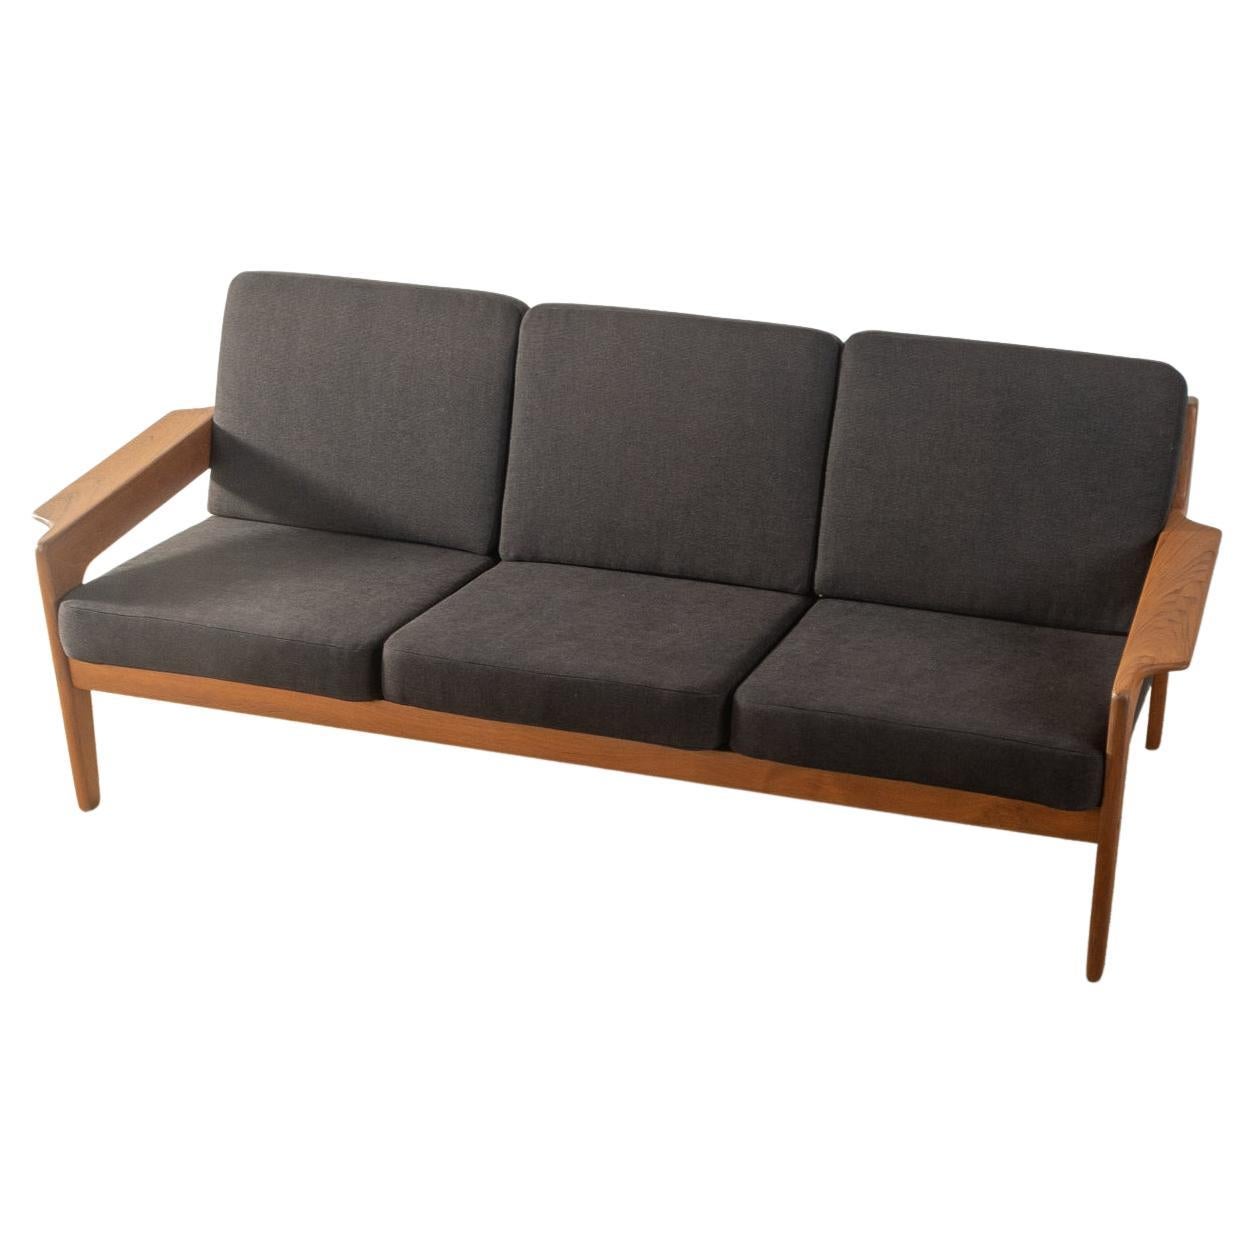 Arne Wahl Iversen Three-Seater Sofa for Komfort